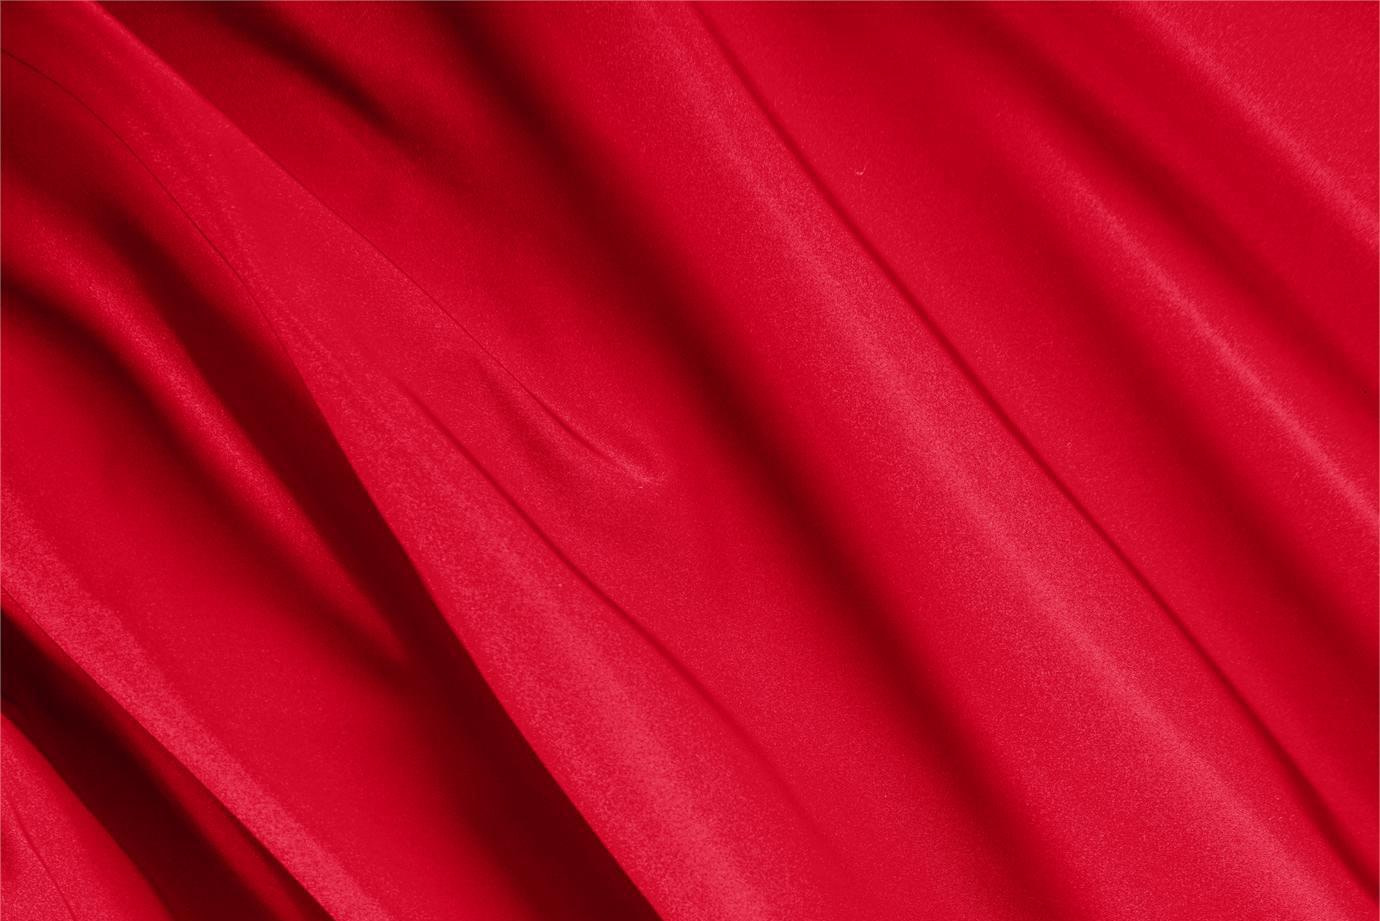 Tessuto Radzemire Rosso Fuoco in Seta per Abbigliamento UN000310